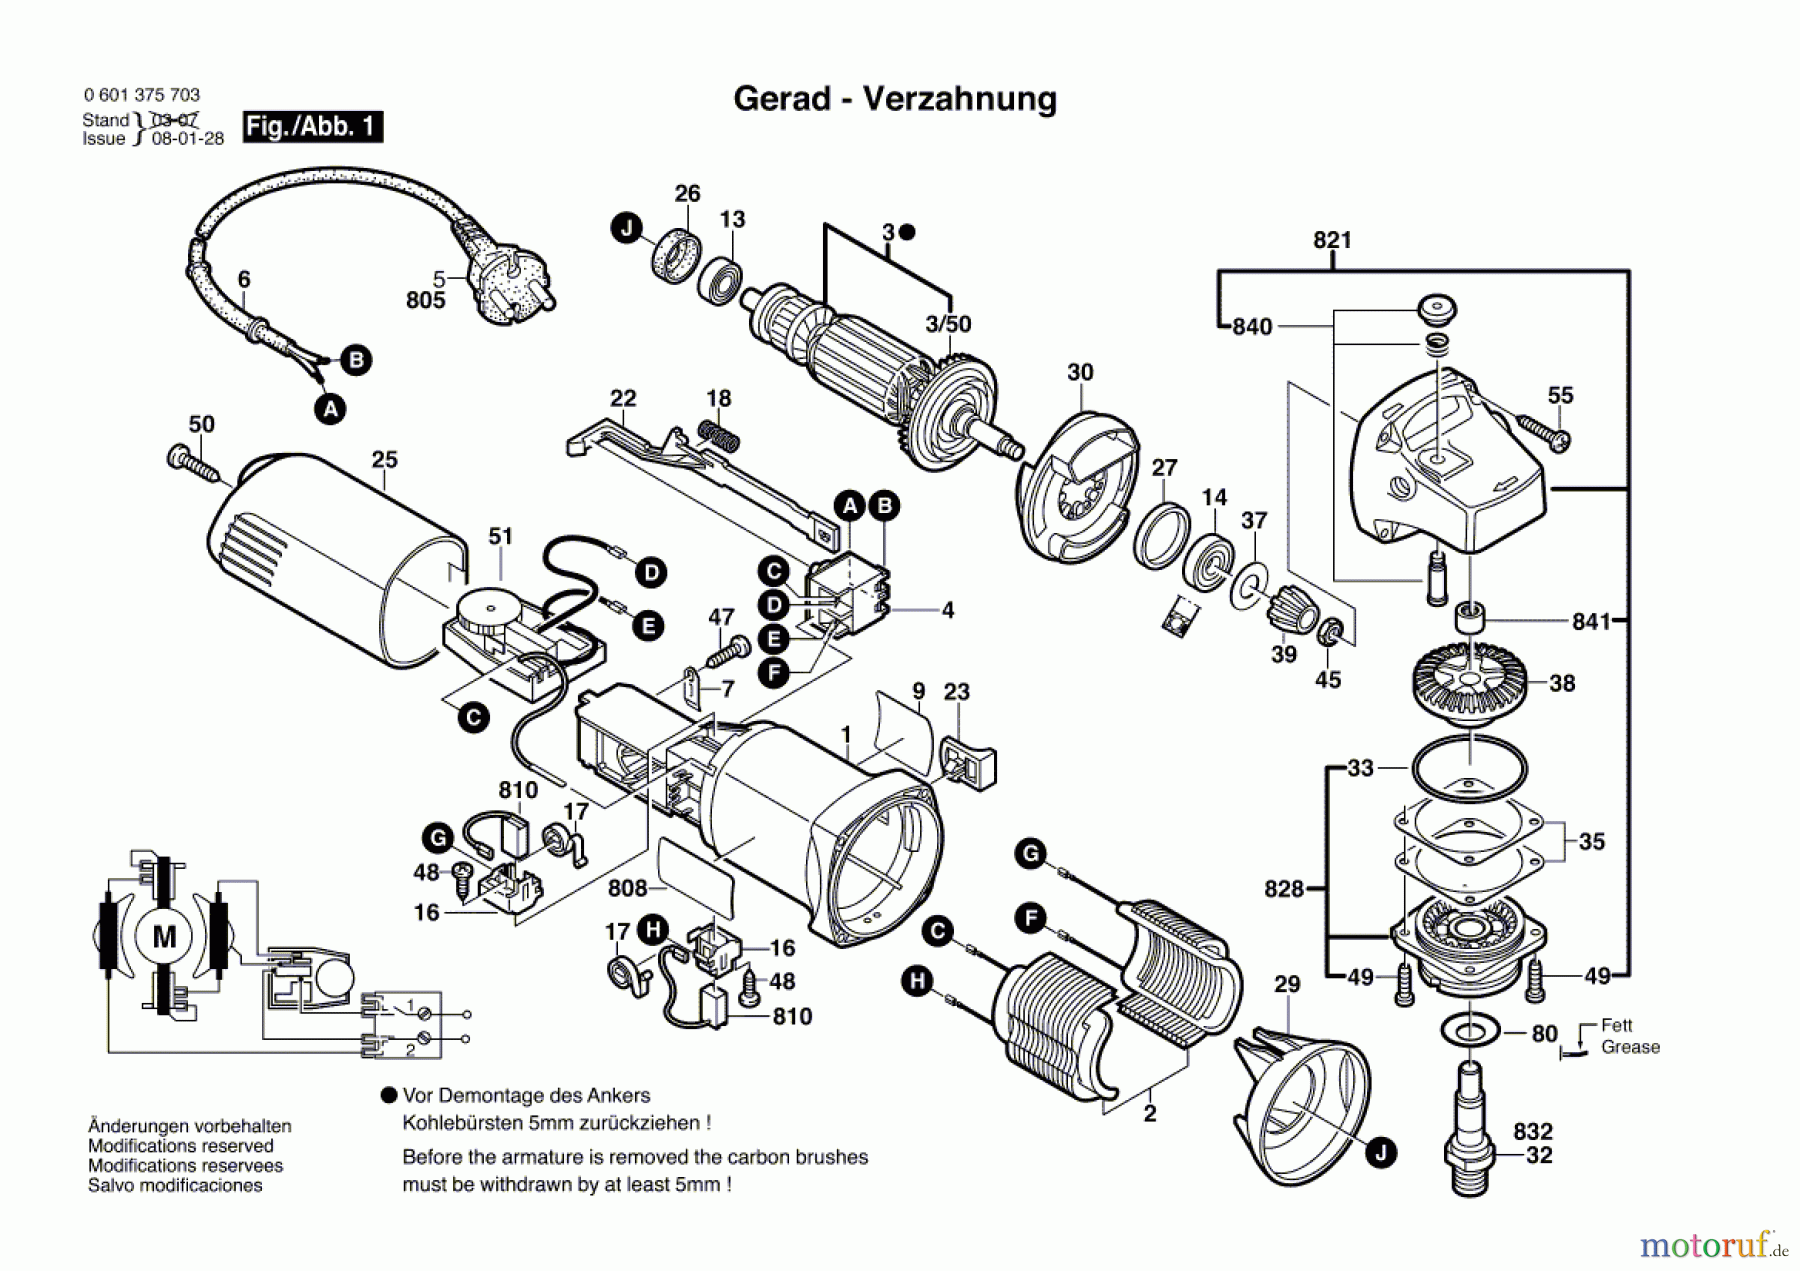  Bosch Werkzeug Winkelschleifer GWS 6-115 E Seite 1